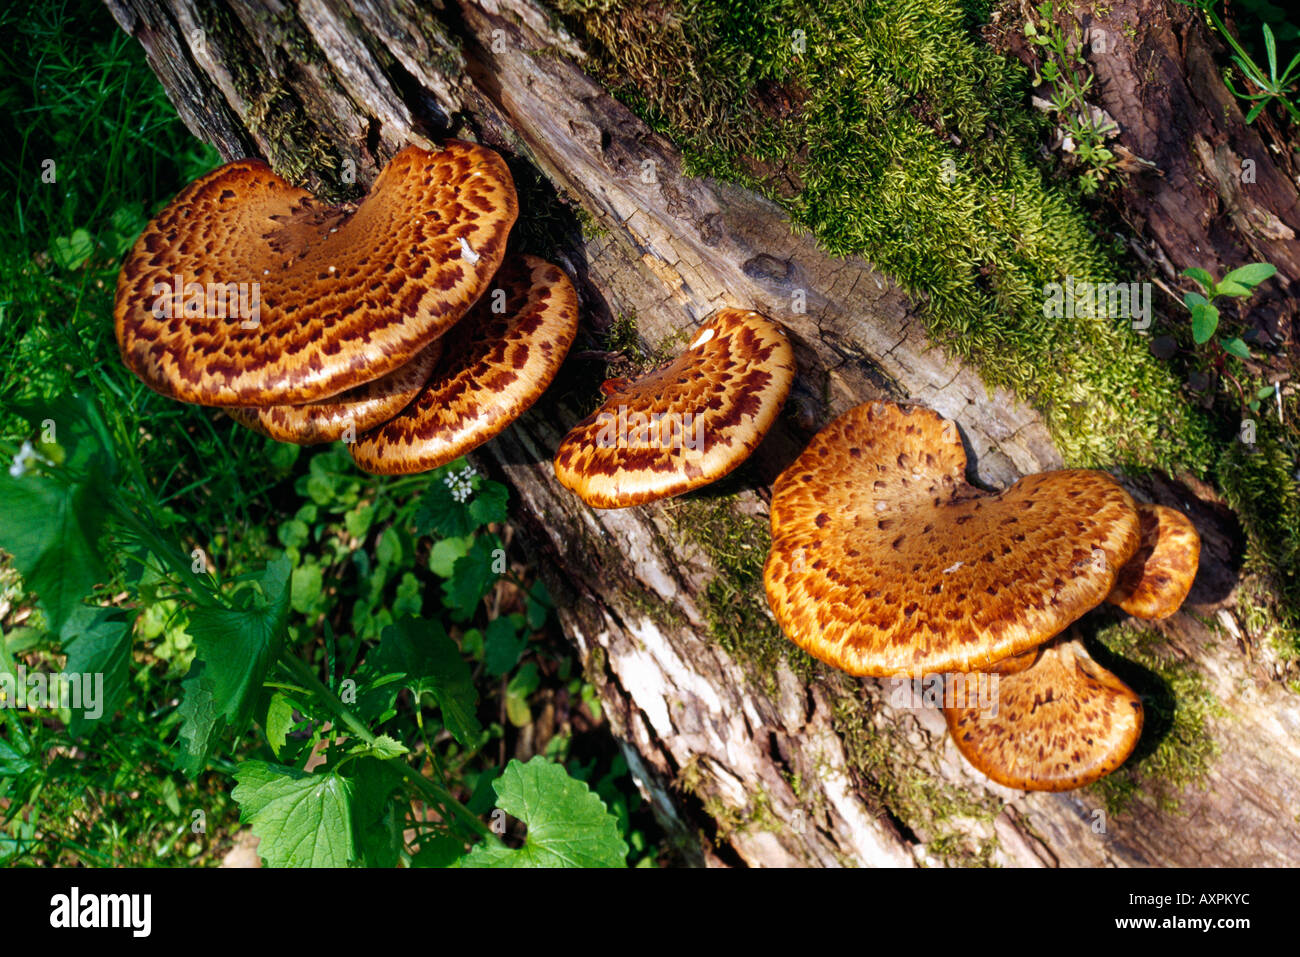 Dryad s saddle fungi on log Stock Photo